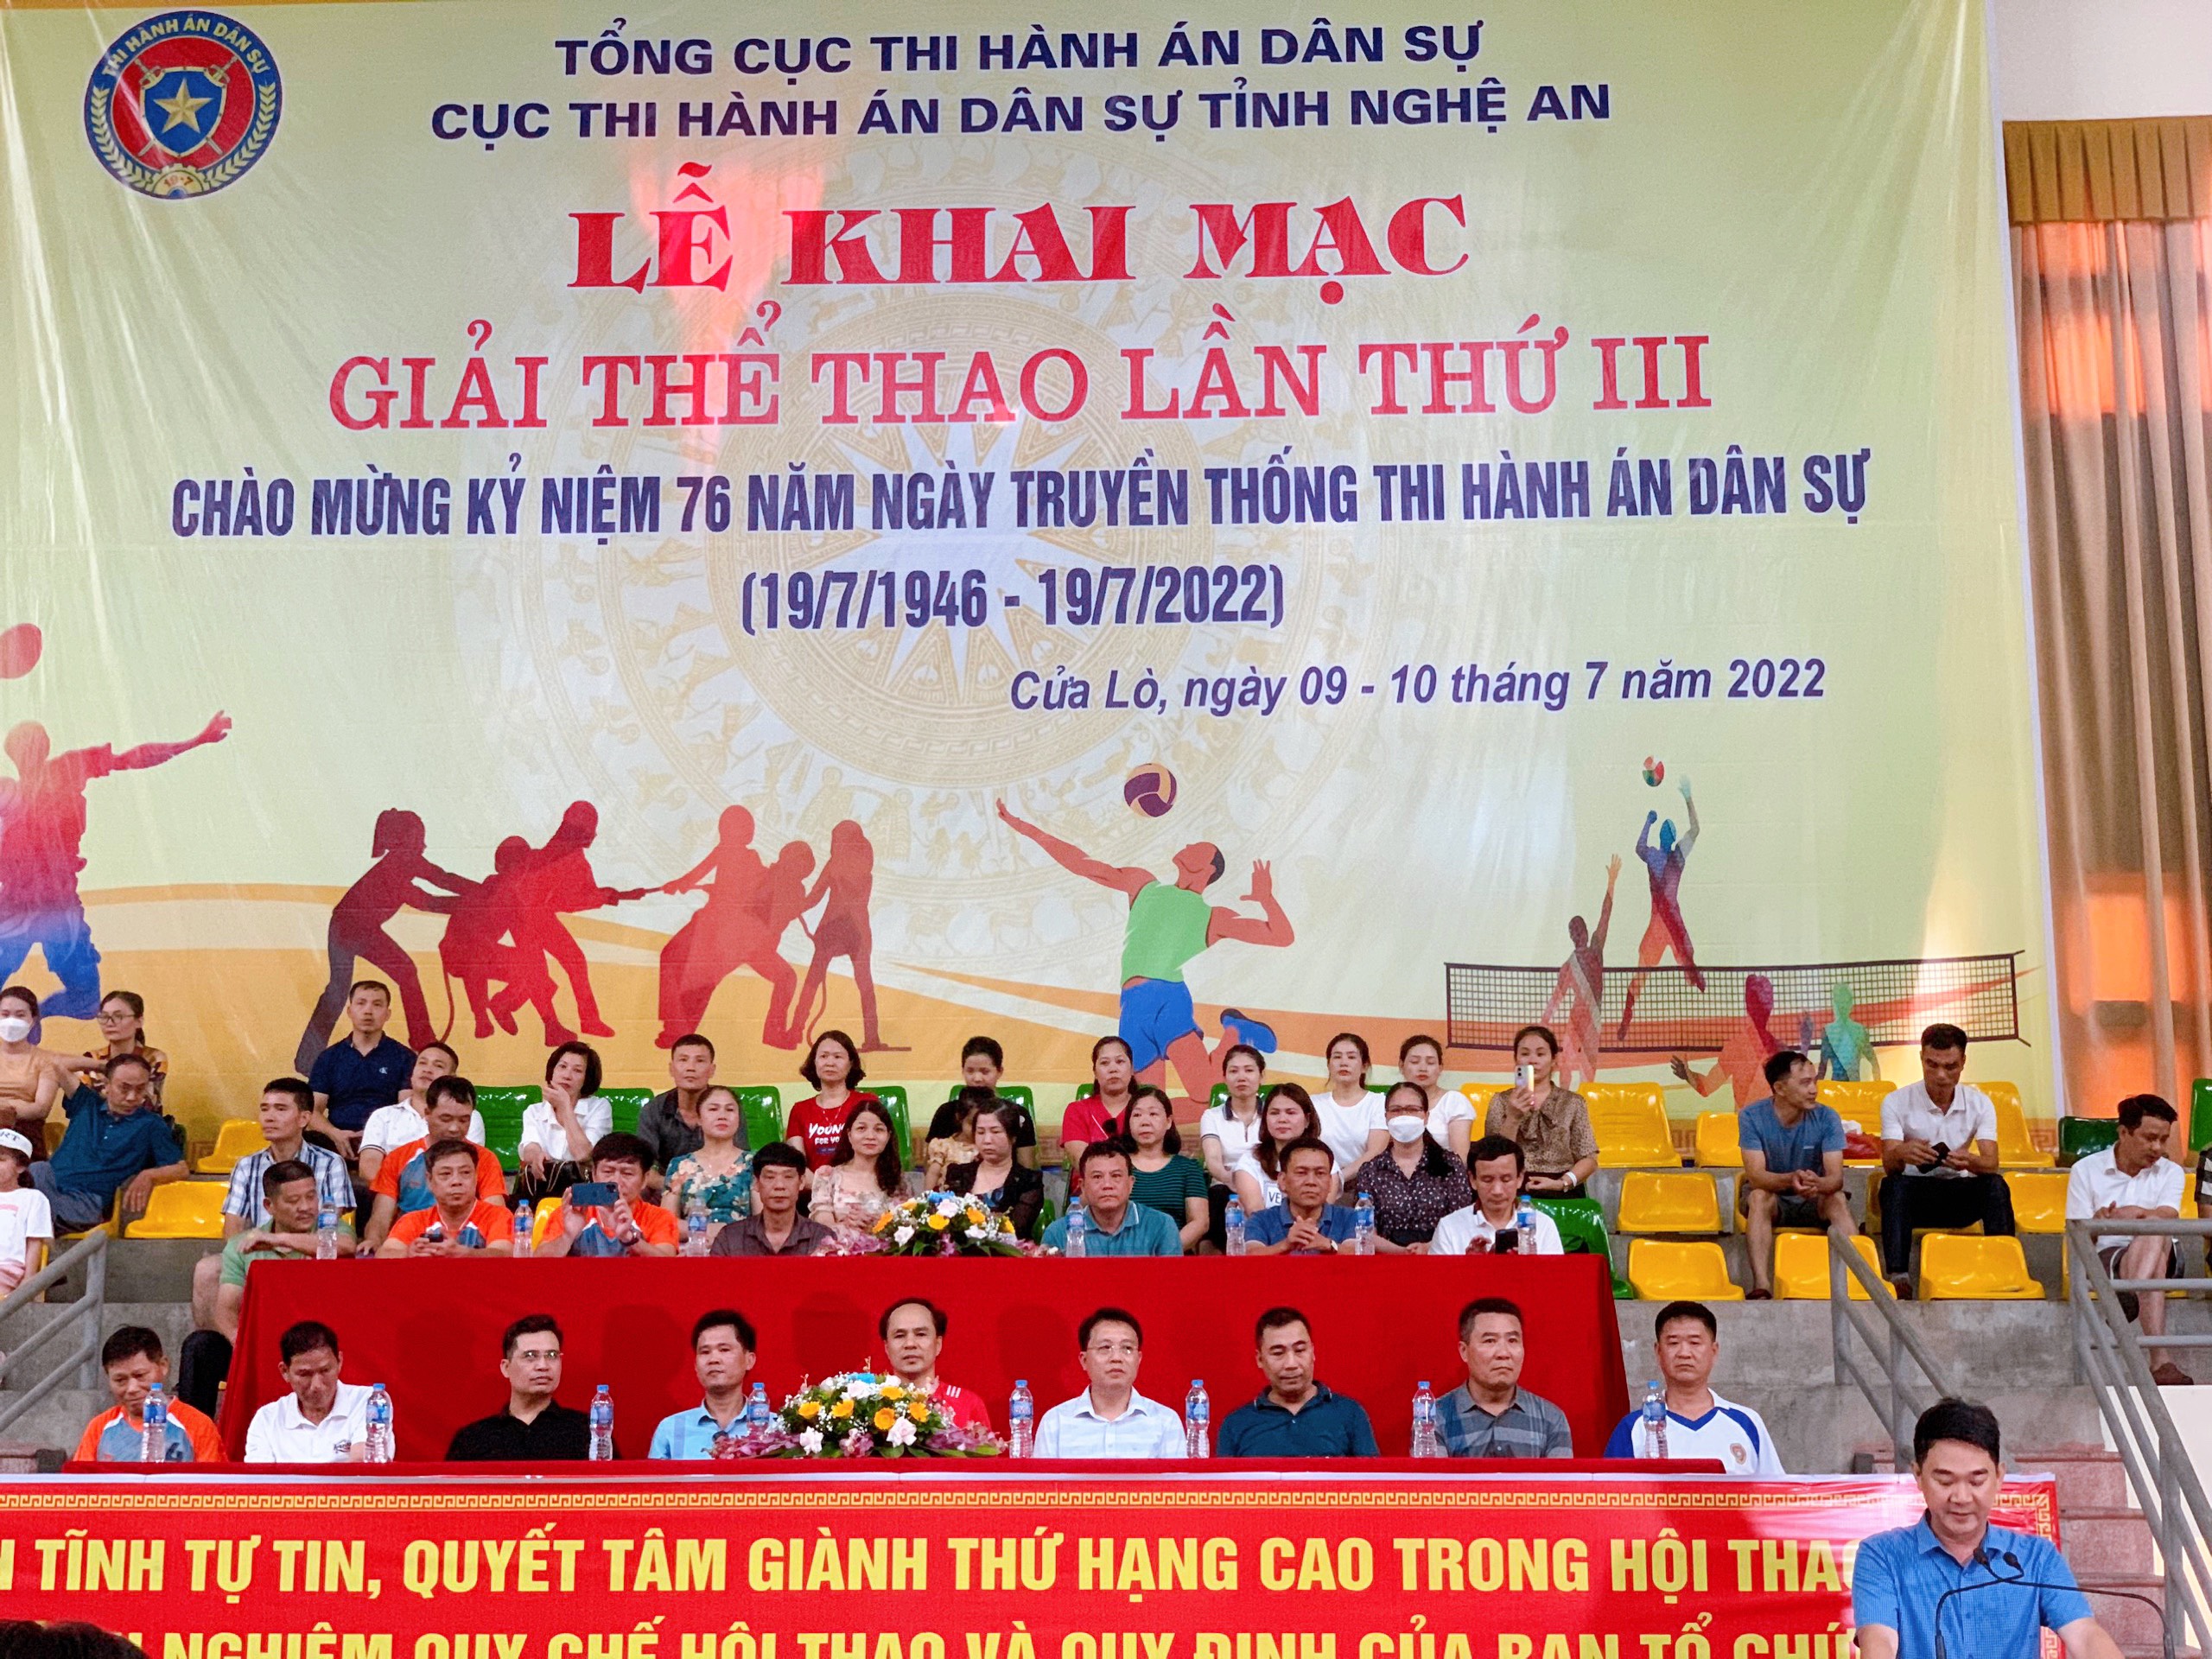 Cục Thi hành án dân sự tỉnh Nghệ An tổ chức giải thể thao lần thứ III, chào mừng kỷ niệm 76 năm ngày truyền thống Thi hành án dân sự (19/7/1946 – 19/7/2022).